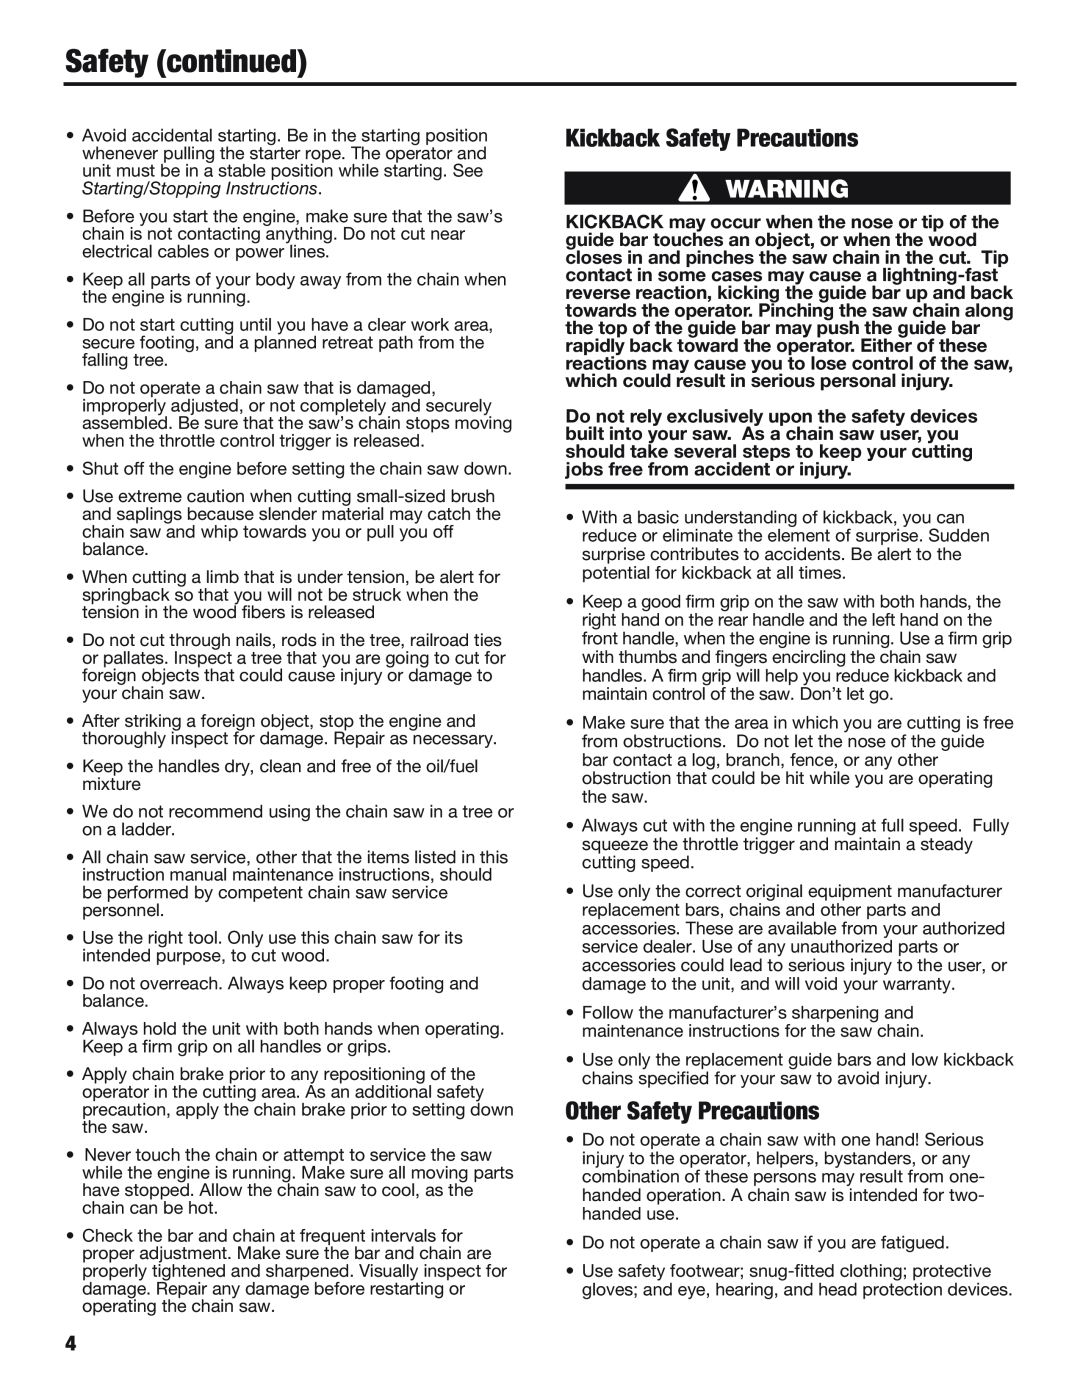 Cub Cadet CS5018, CS5220 manual Safety continued, Kickback Safety Precautions, Other Safety Precautions 